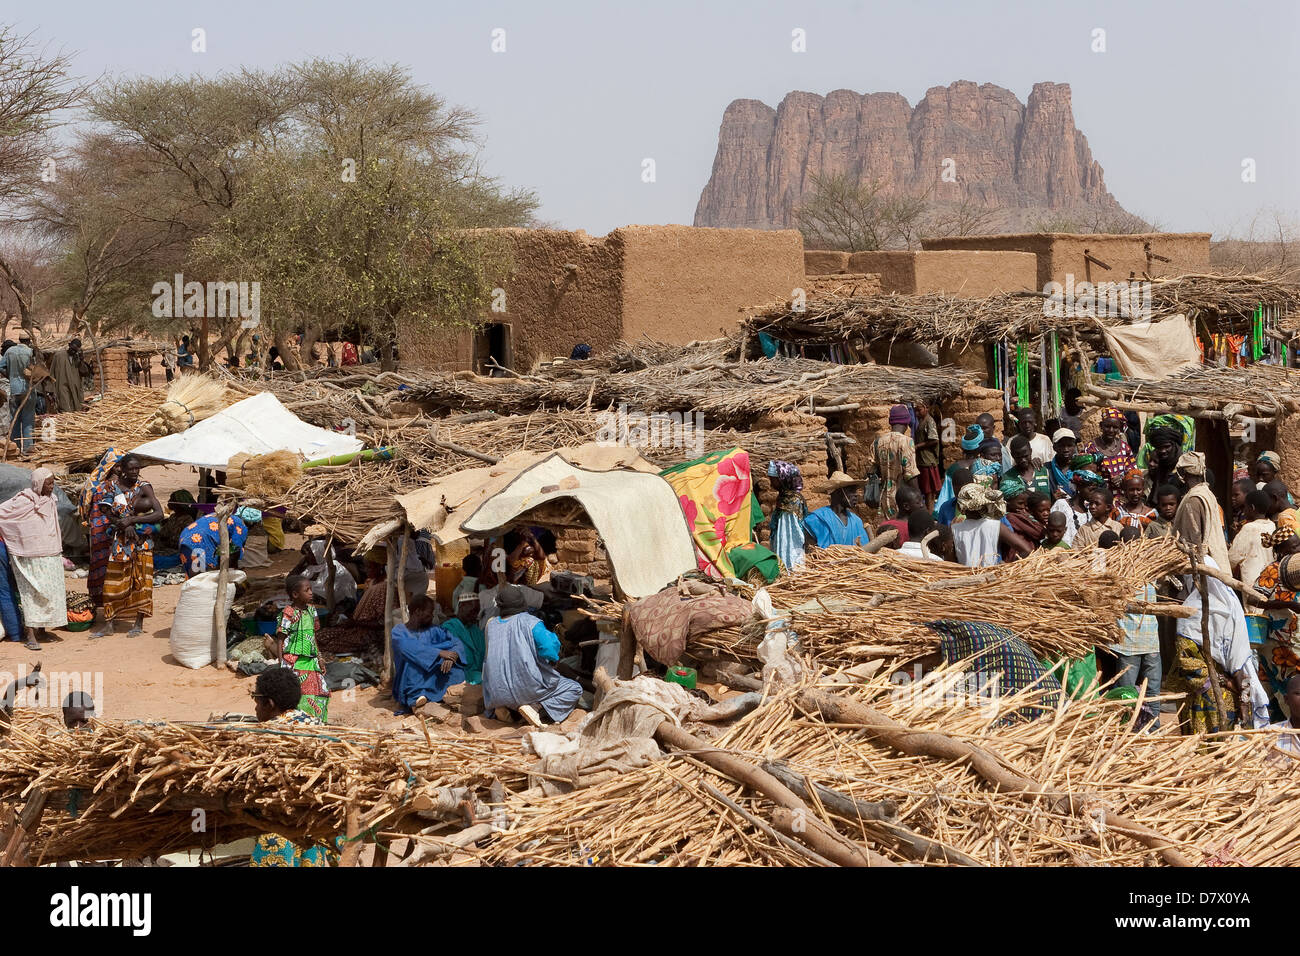 Marché de village Dogon de Symbi avec colonies de nomades touaregs, Peuls), Peul (langue sonraï et peuple Dogon, au Mali Banque D'Images